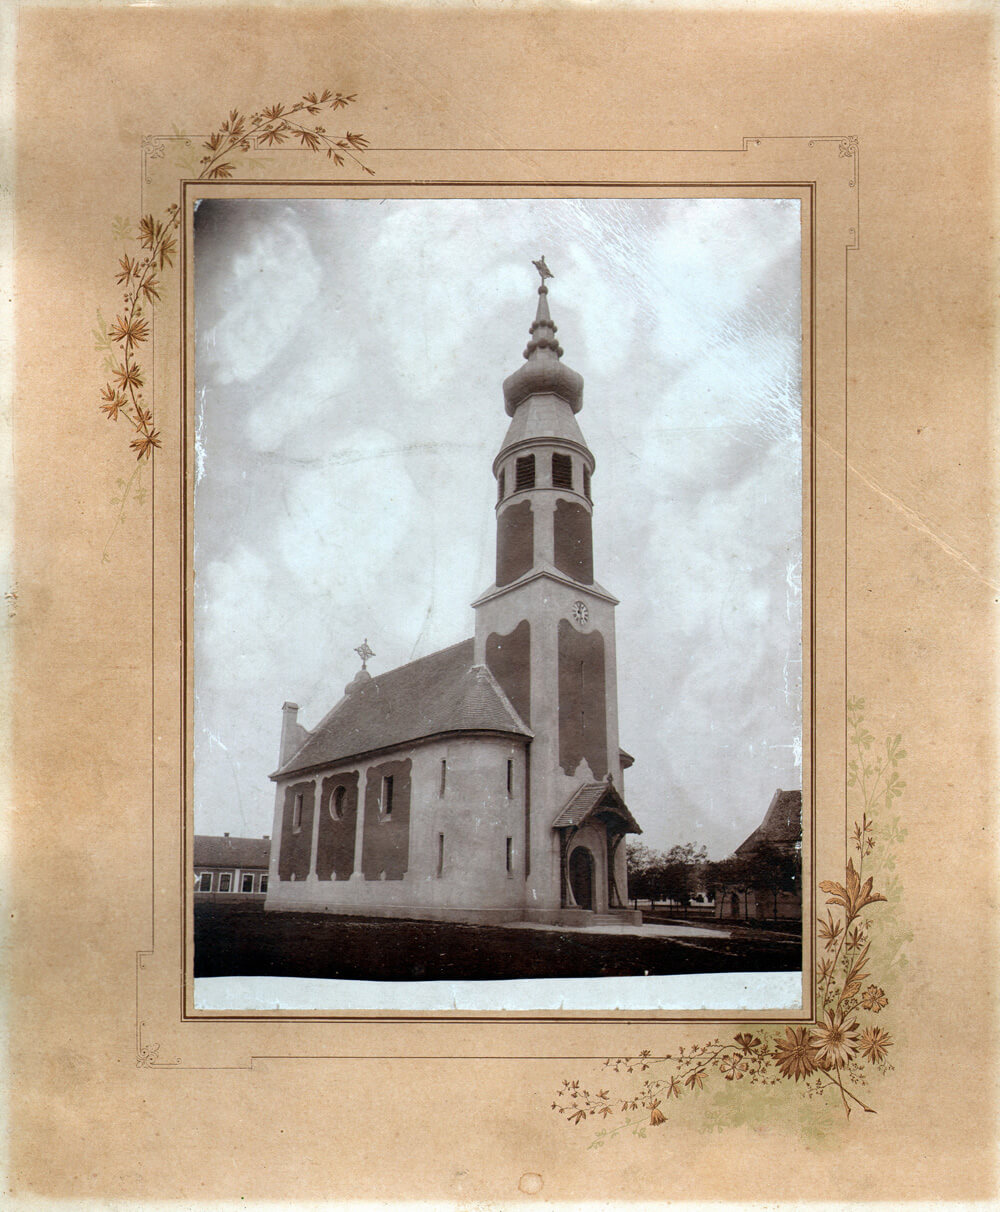 sl-2-evangelicka-crkva-1902-skenirana-fotografija-vlasniatvo-evangelicke-crkvene-opstine